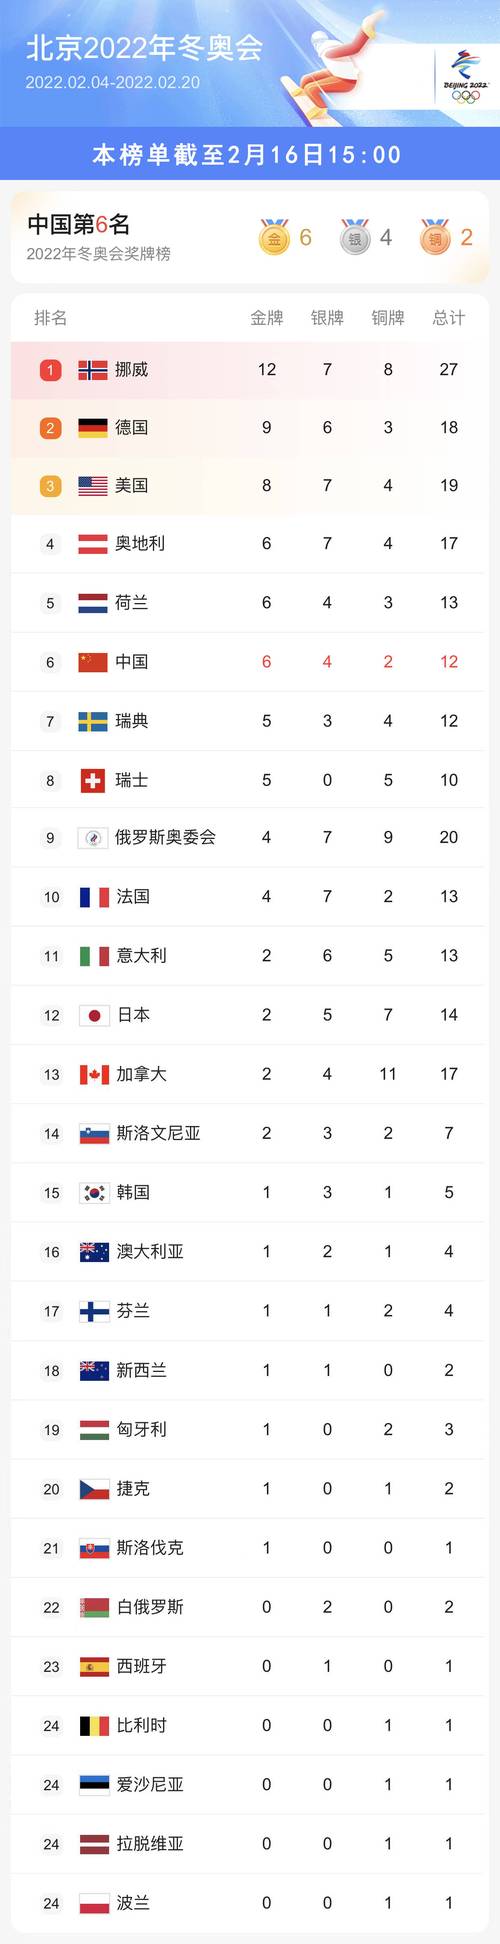 2022冬奥会奖牌榜排名